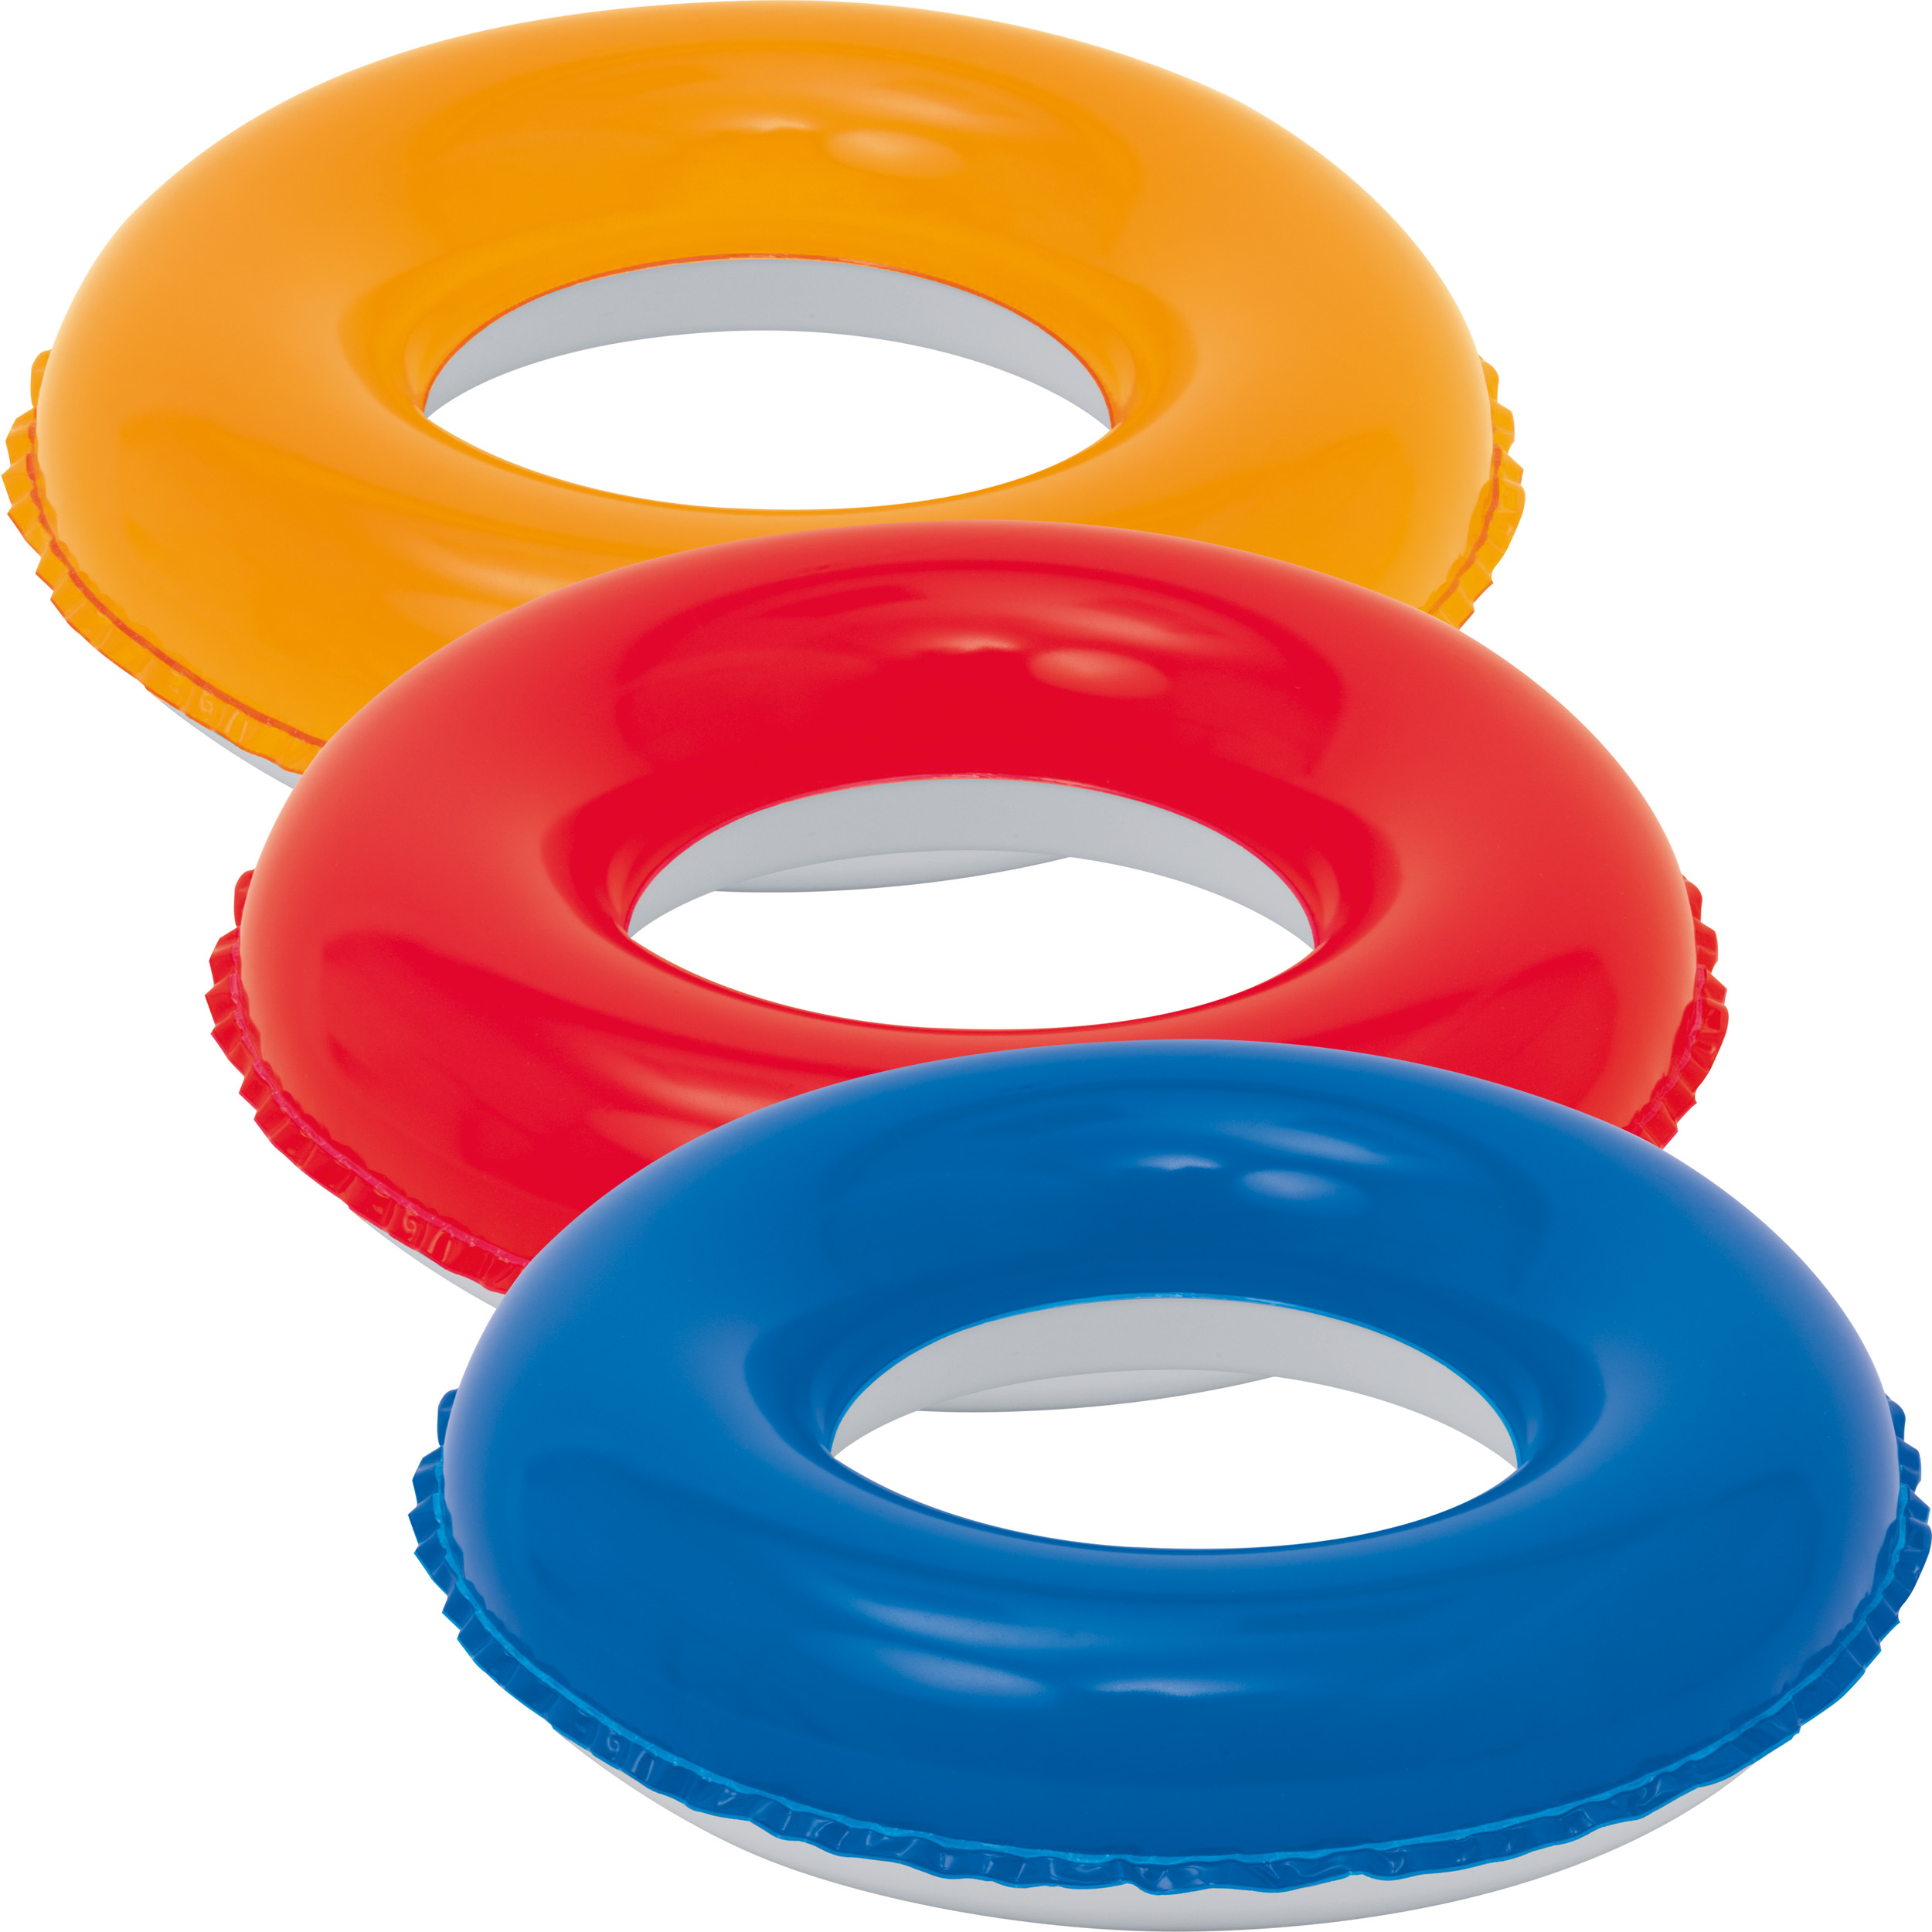 2-Farbiger Reifen zum Aufblasen aus phthalatfreiem PVC